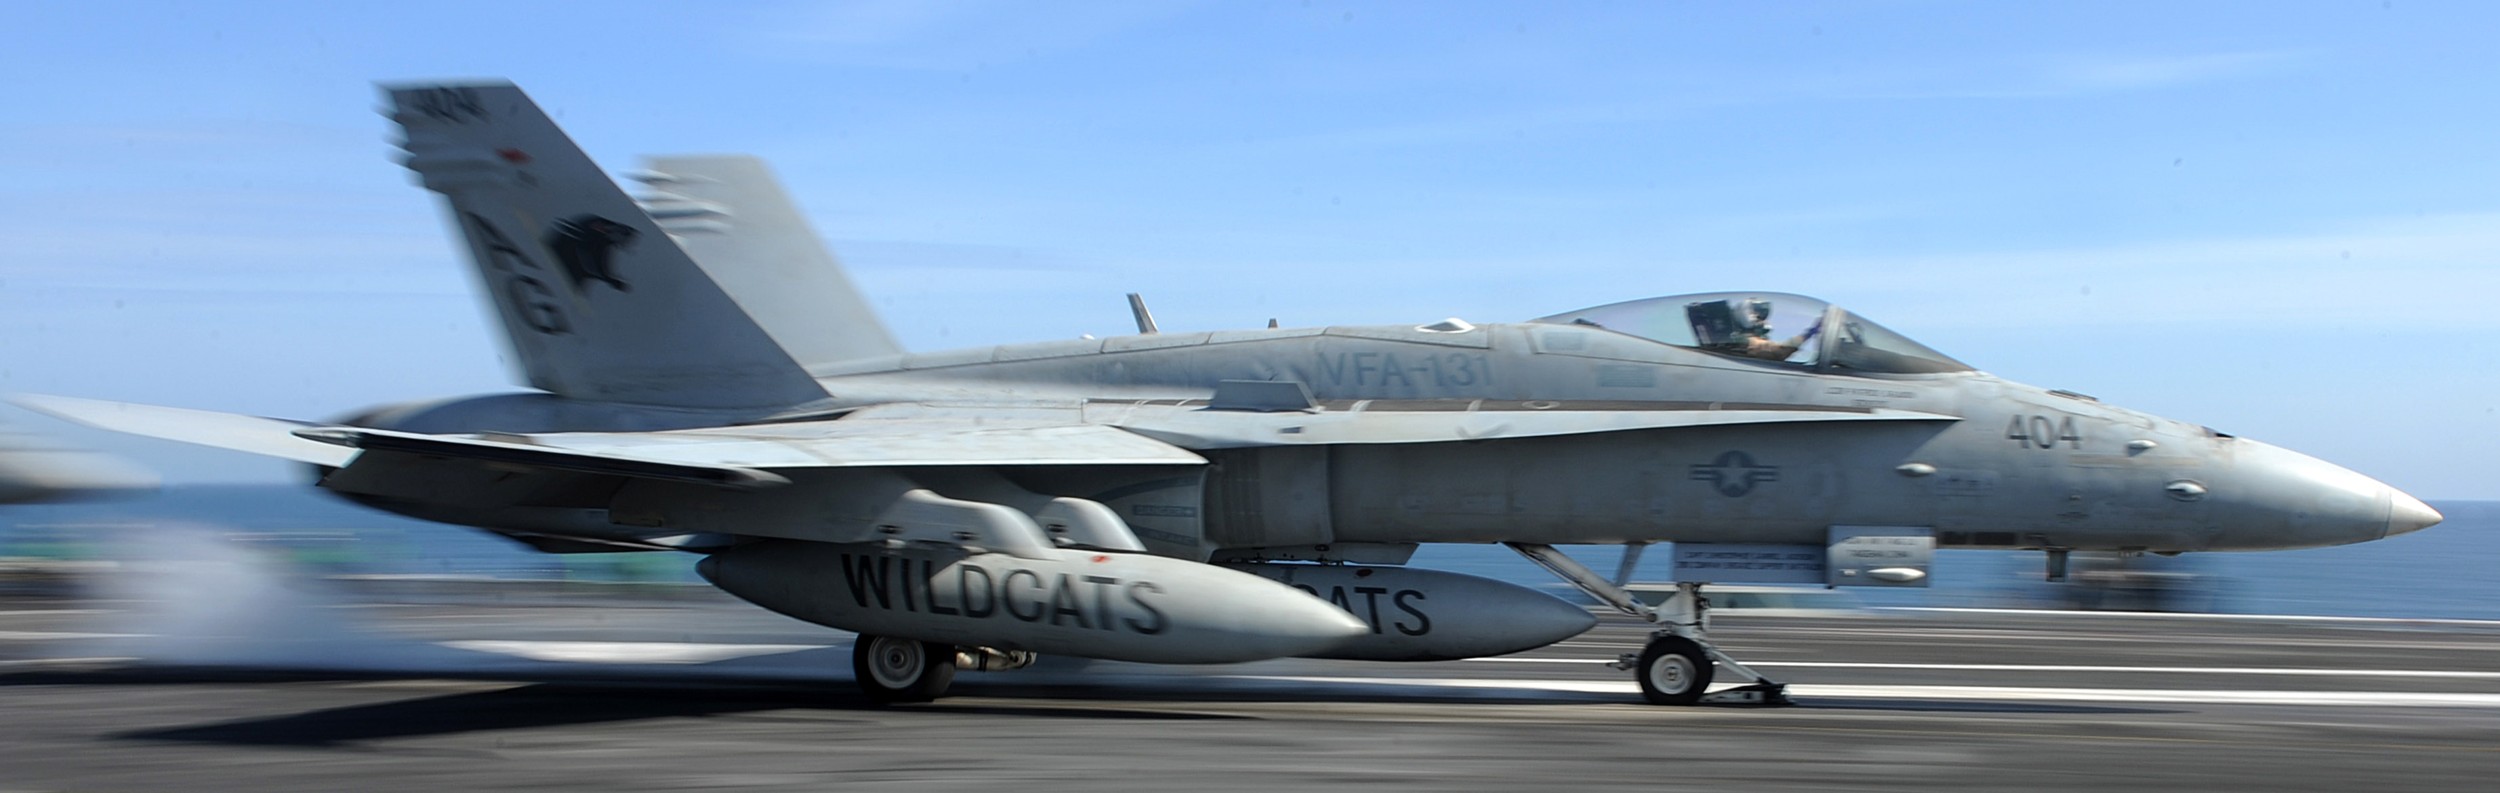 vfa-131 wildcats strike fighter squadron f/a-18c hornet cvw-7 uss dwight d. eisenhower cvn-69 2013 46